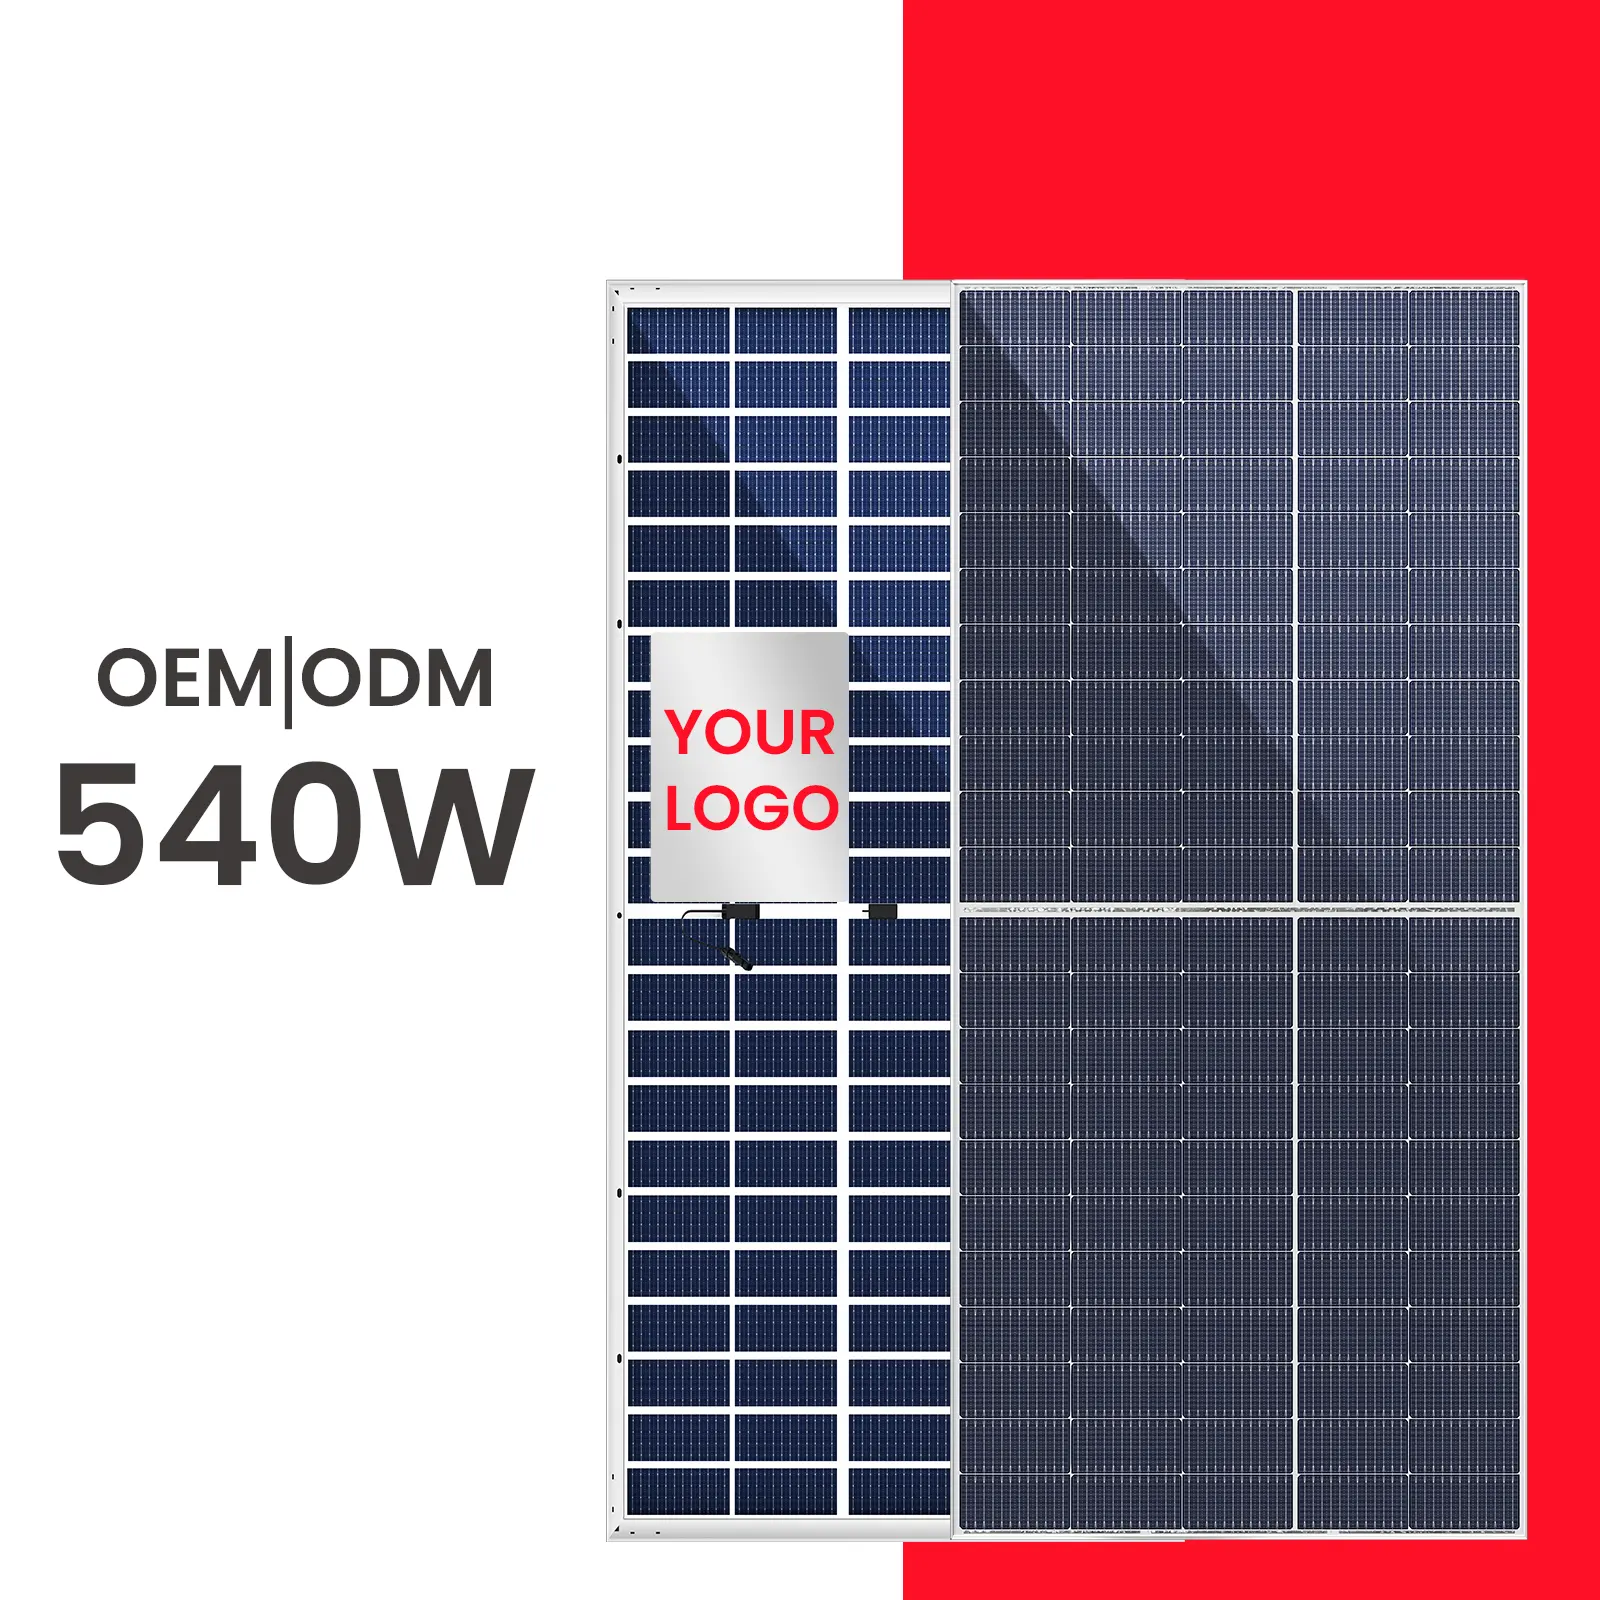 OEM 20GW tersedia modul Perc Pv Panel surya Panel fotovoltaik surya 540w biru Bifacial